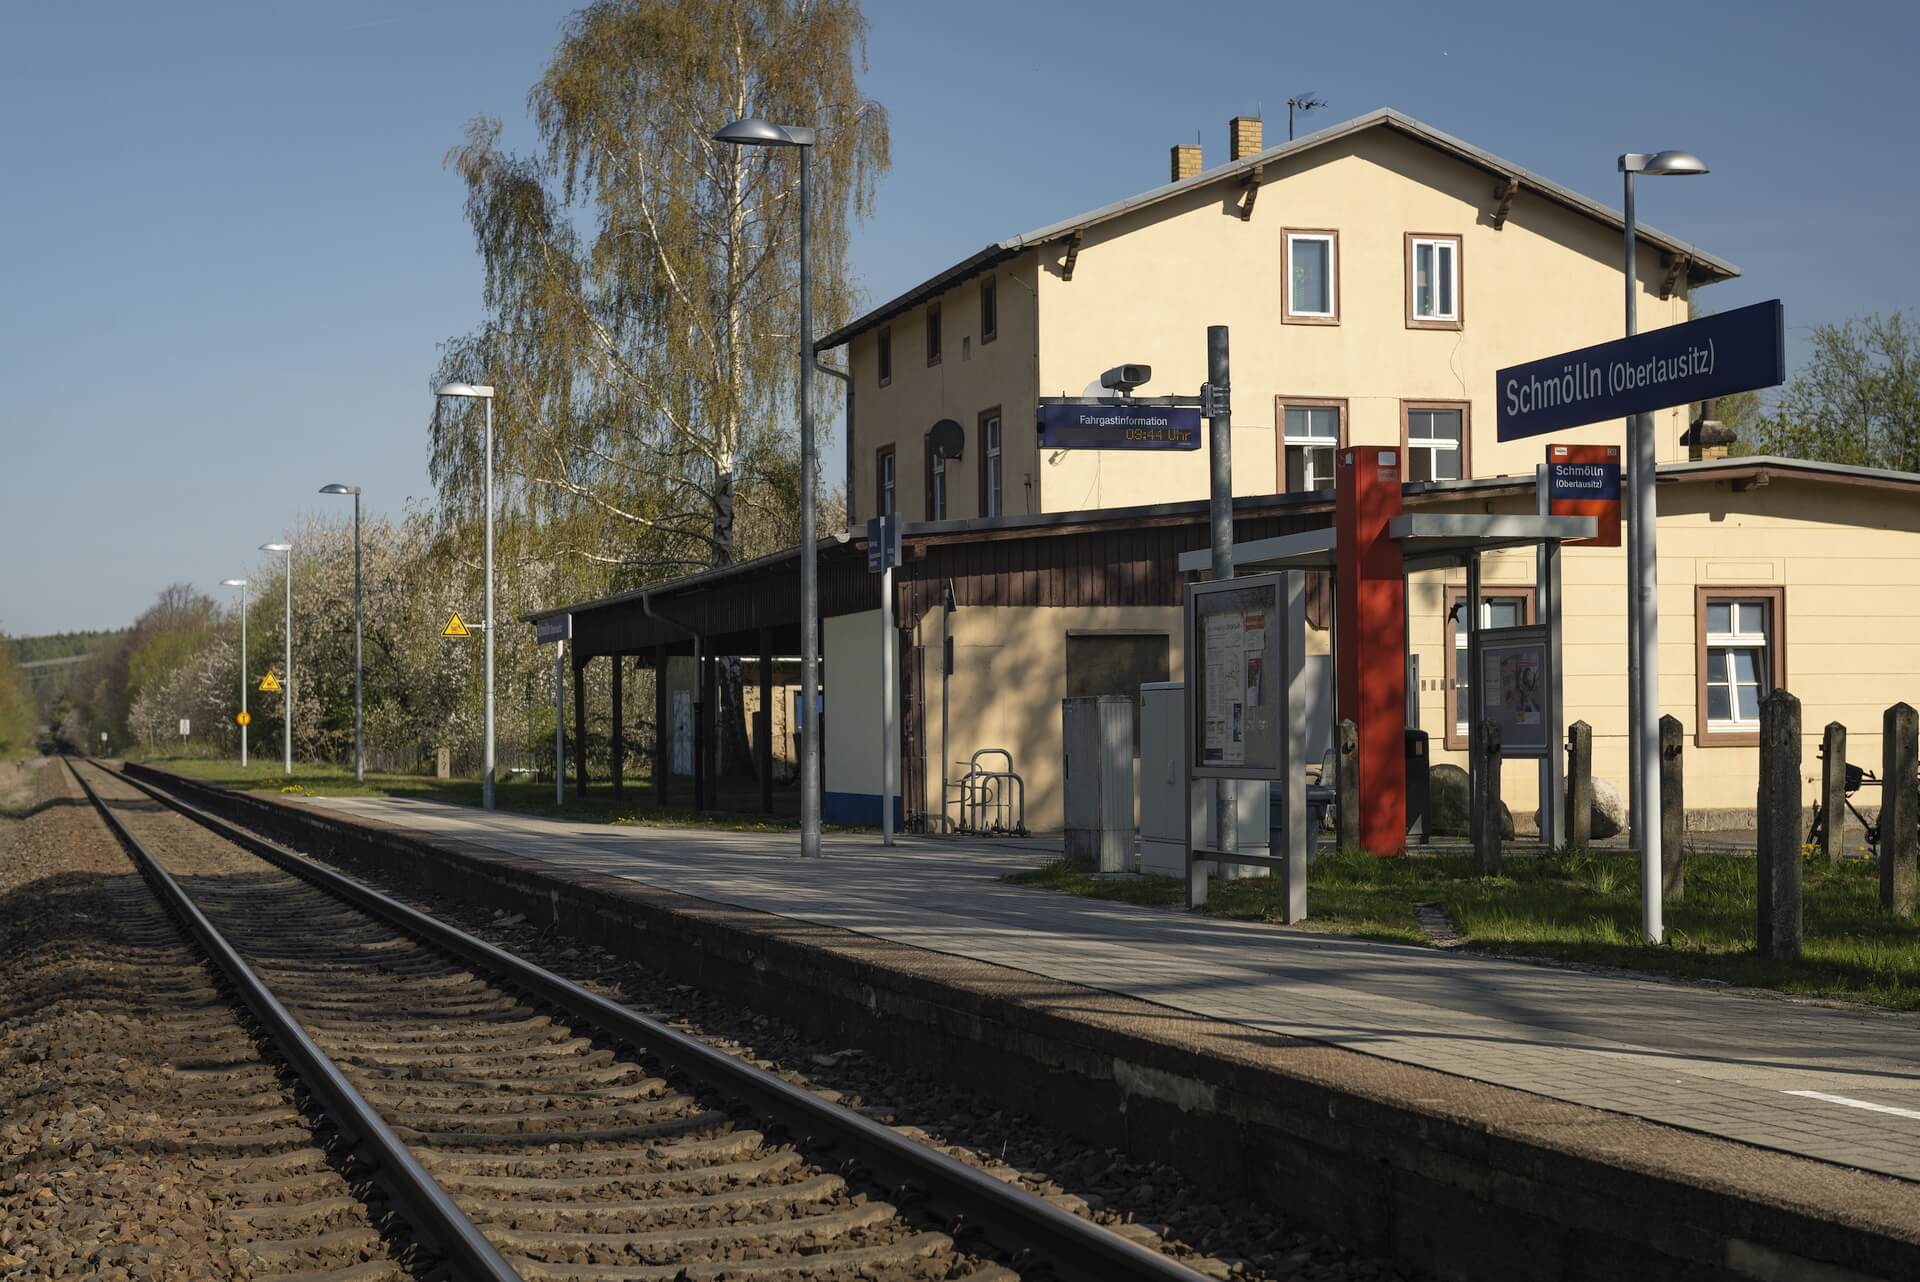 Bahnhof Schmölln (Oberlausitz)